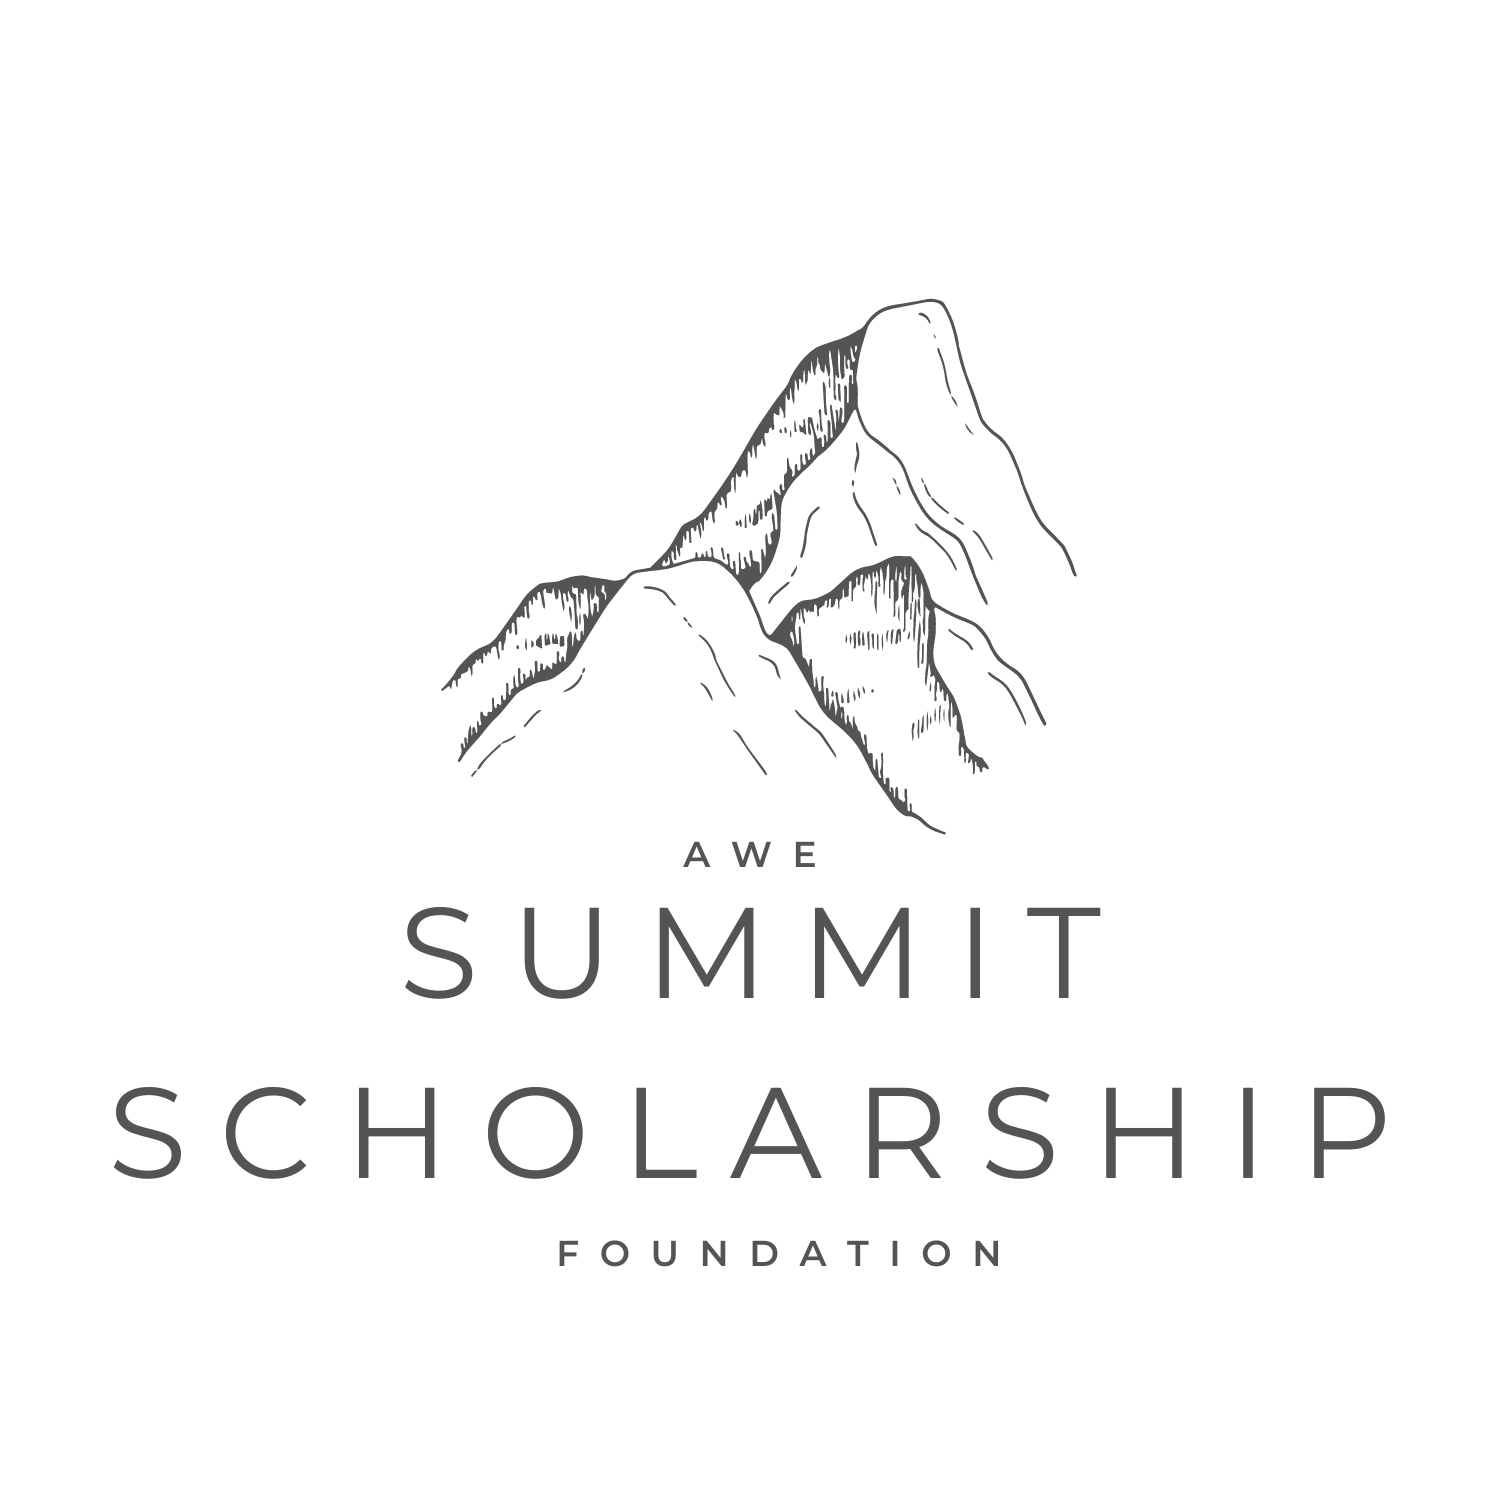 The AWE Summit Scholarship Foundation